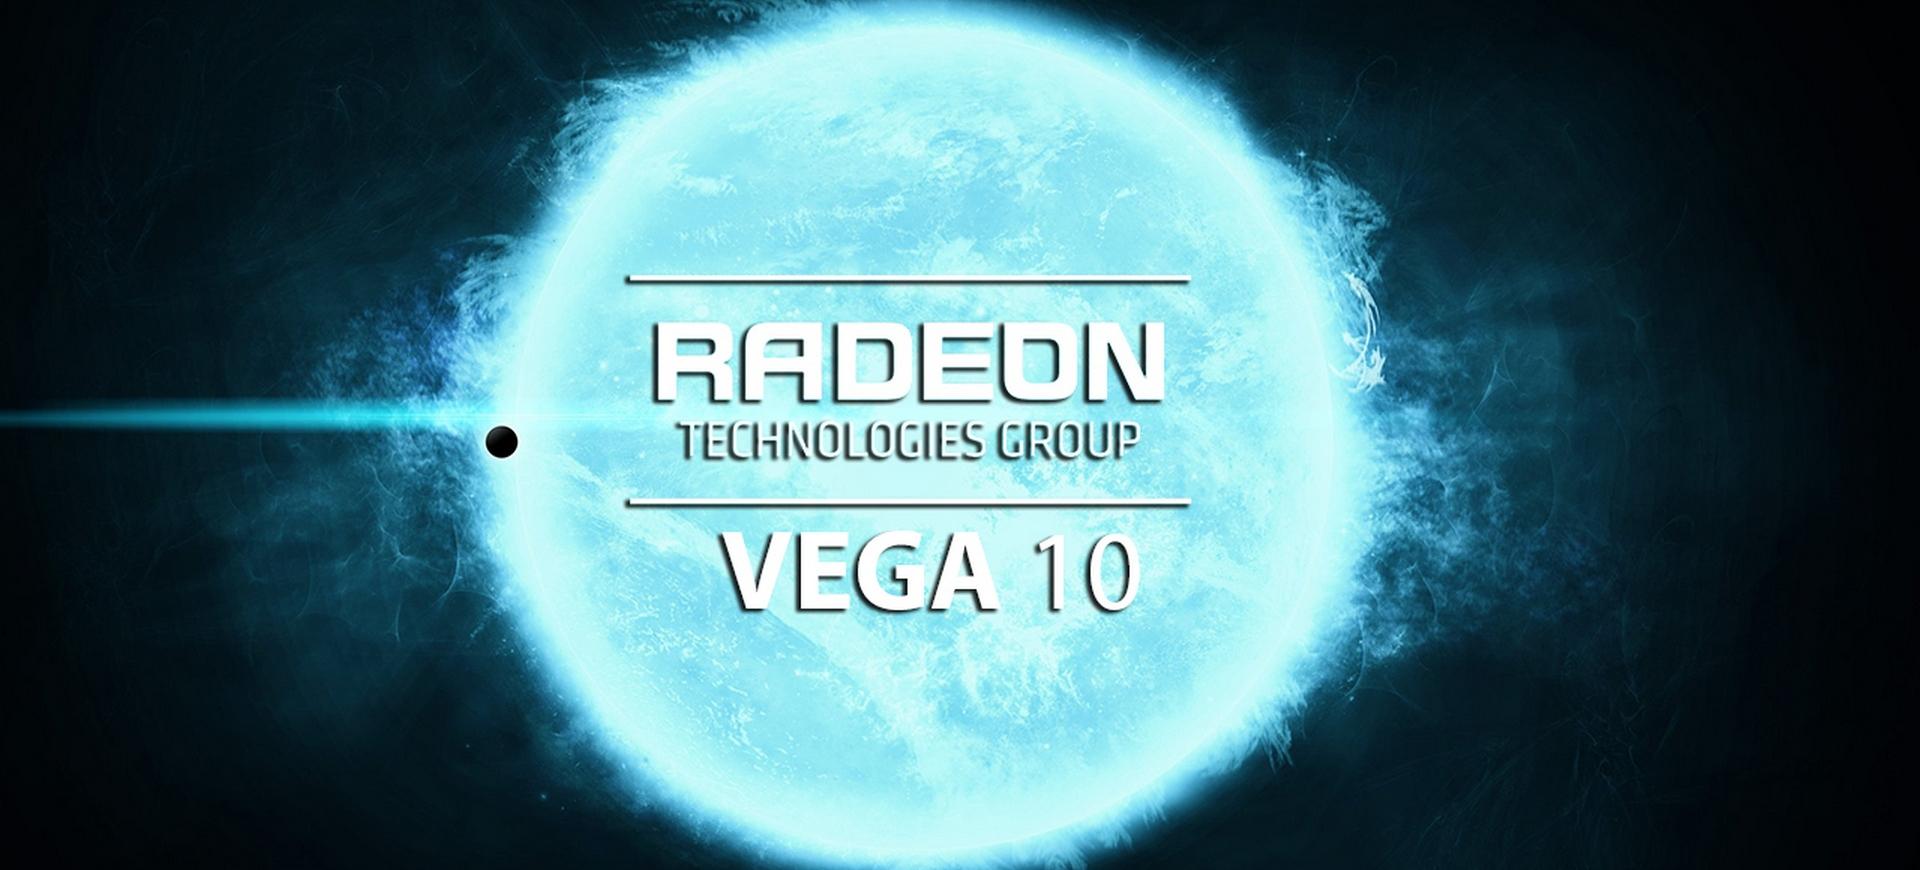 AMD có thể cho ra mắt vi xử lý đồ họa Vega 10 vào năm 2017